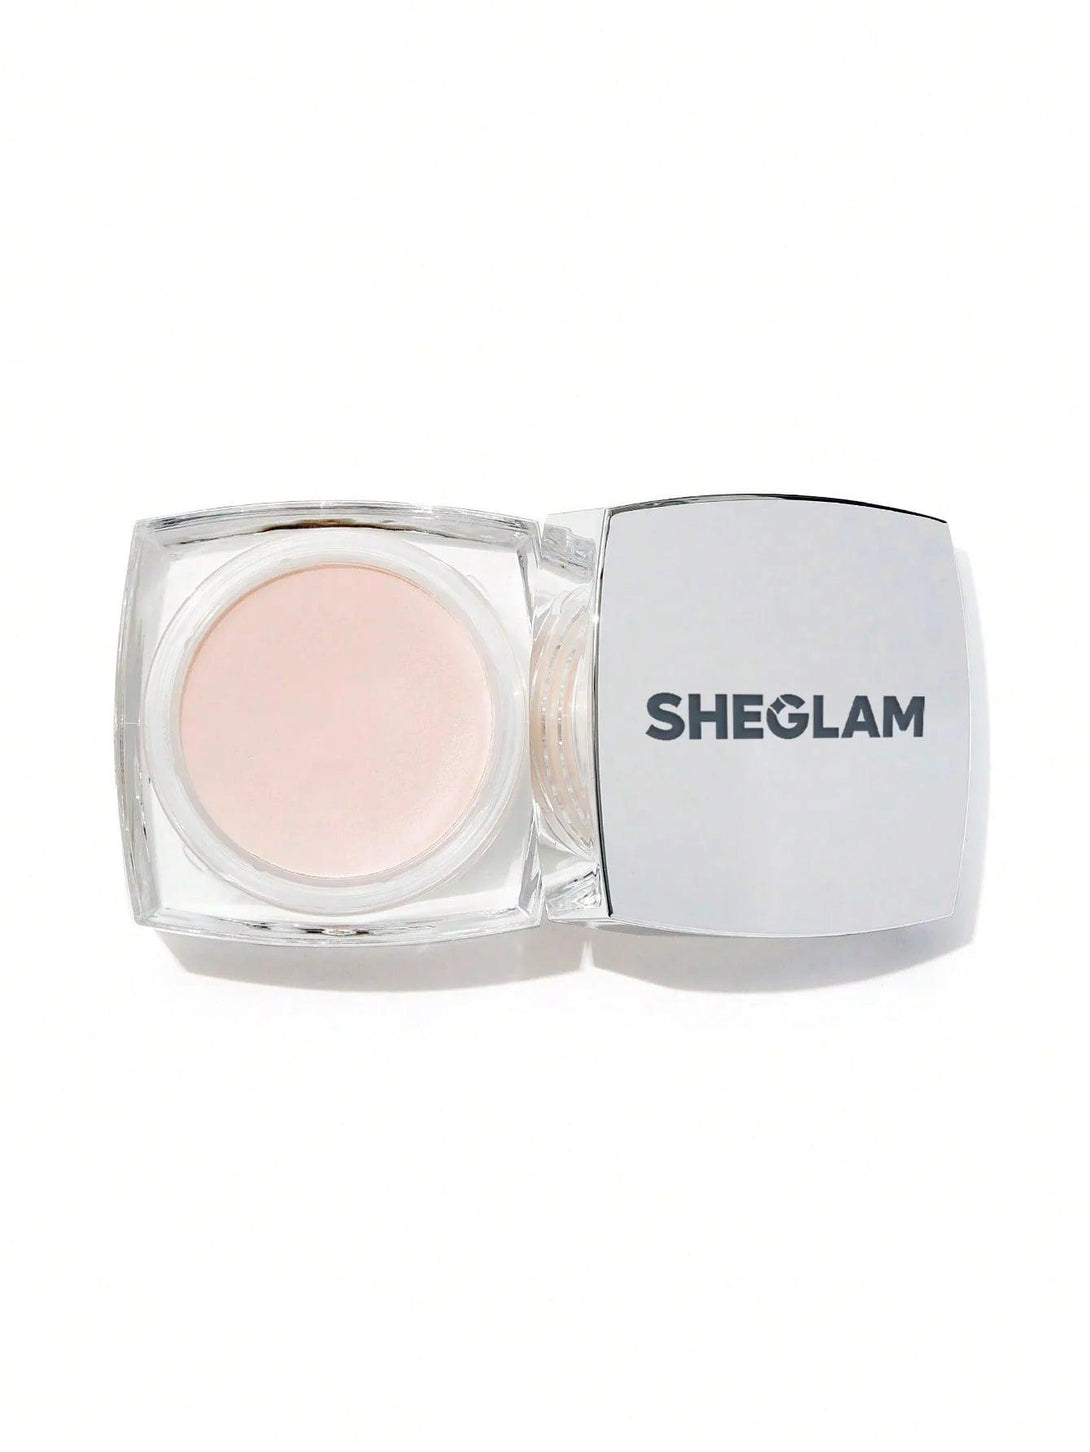 SHEGLAM - BIRTHDAY SKIN PRIMER - Cosmetic Holic